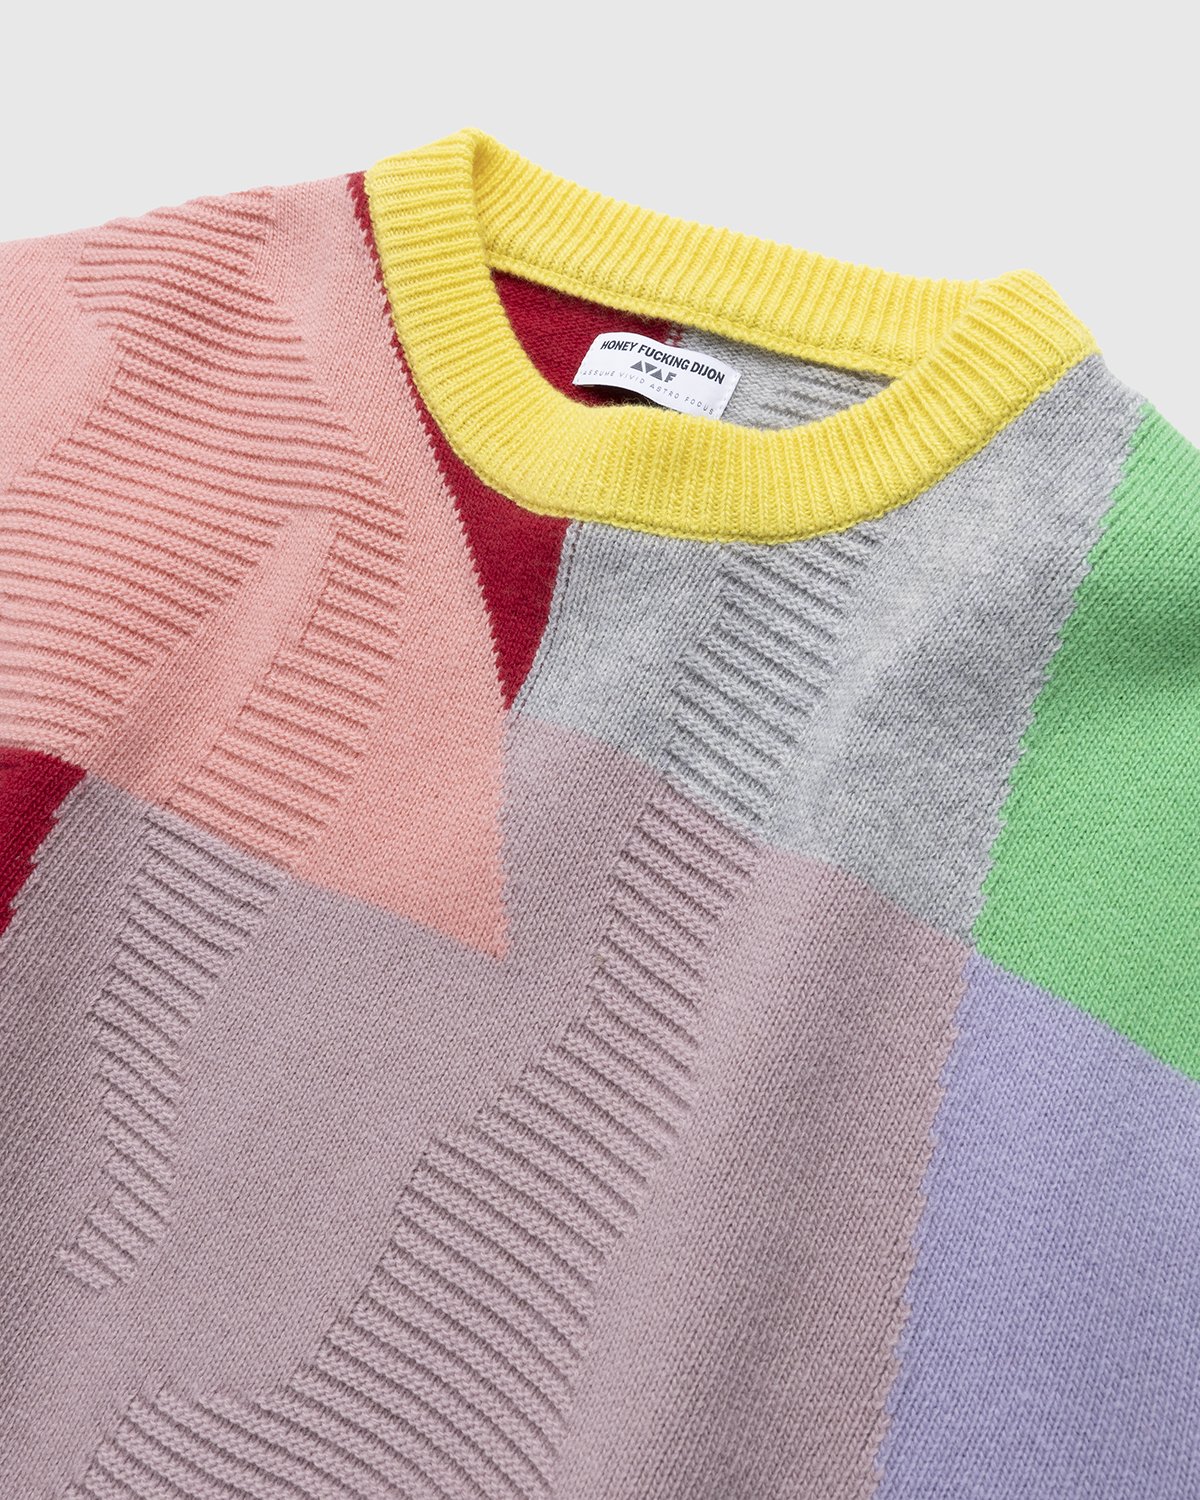 Honey Fucking Dijon x Eli Avaf - Textured Crewneck Knitted Sweater - Clothing - Multi - Image 3